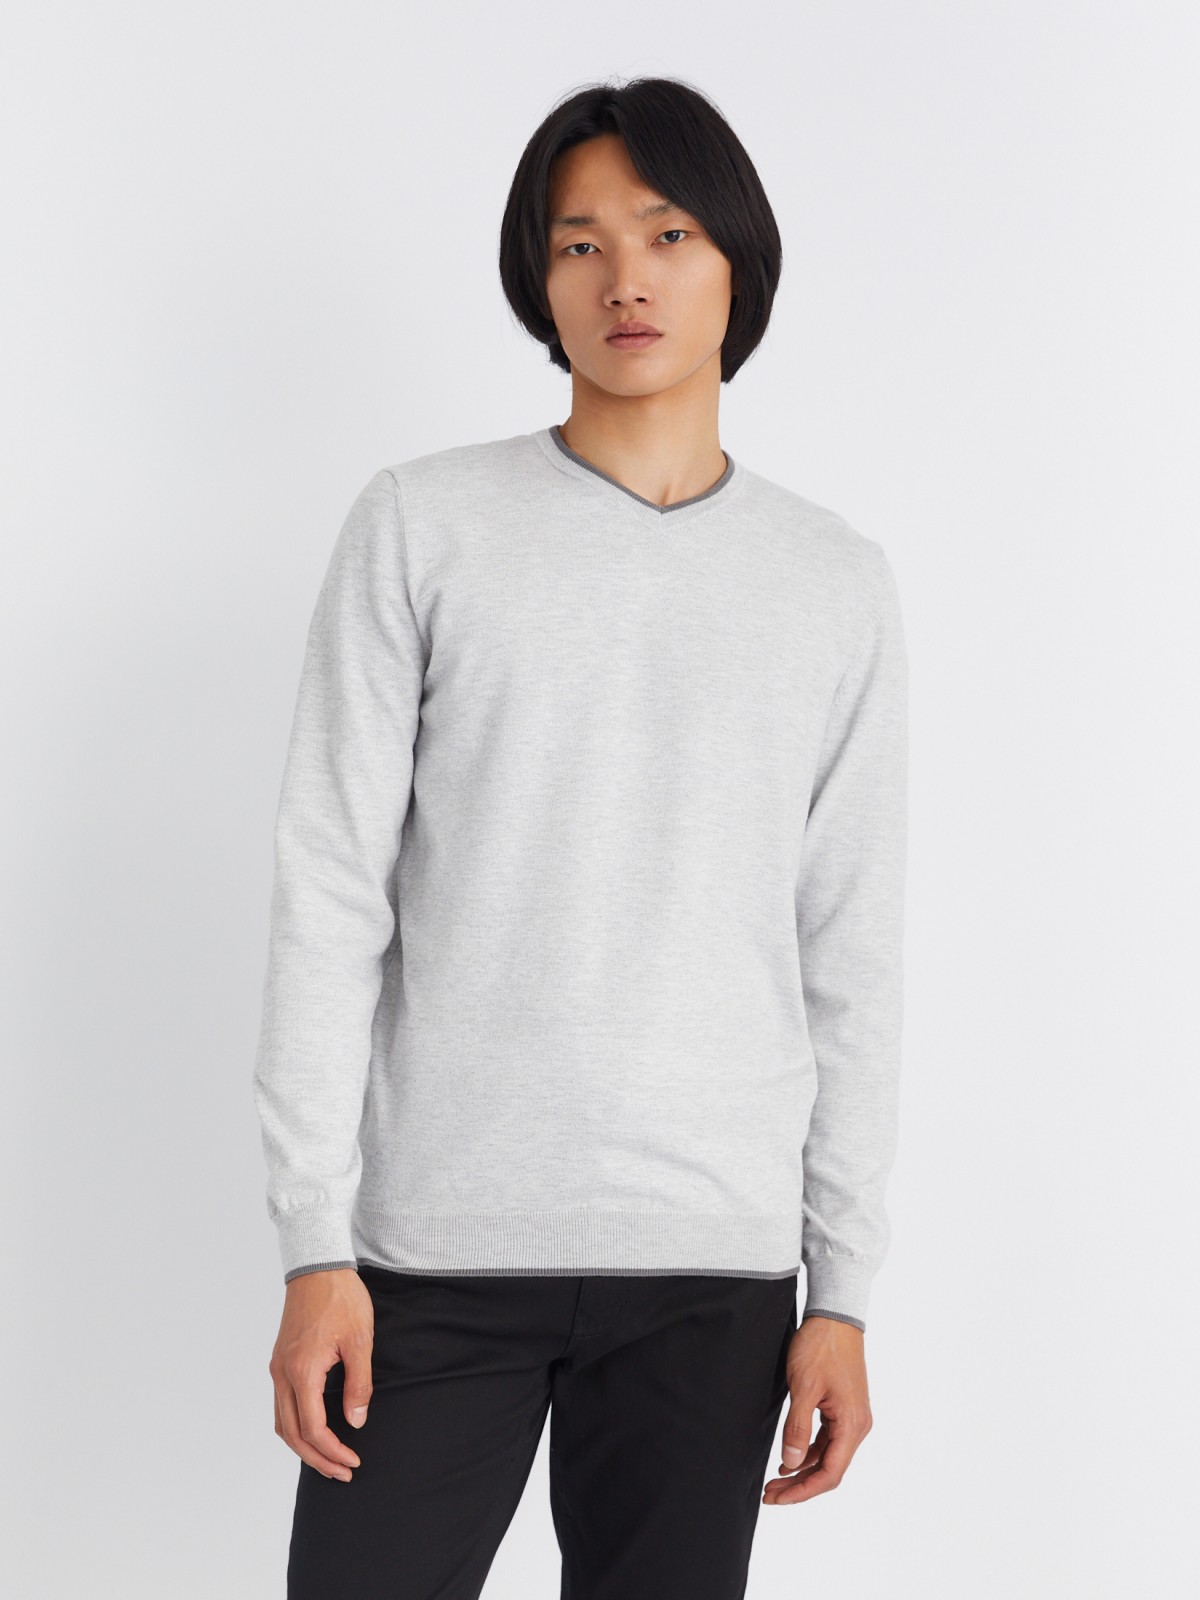 Тонкий трикотажный пуловер с треугольным вырезом и длинным рукавом zolla 213336165022, цвет светло-серый, размер L - фото 5